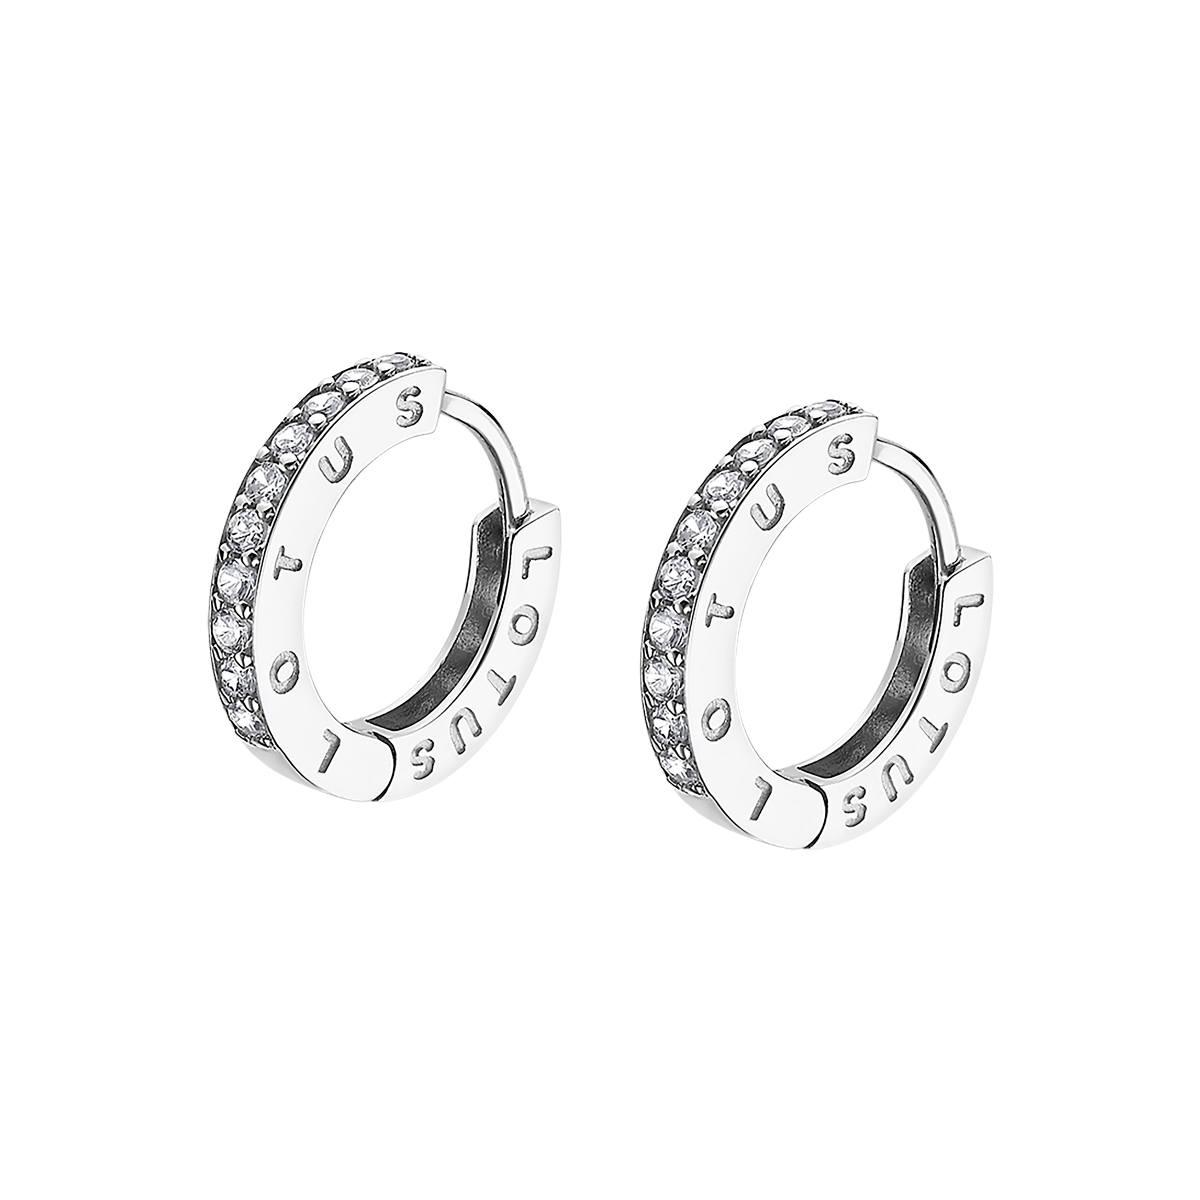 lotus silver earrings lp188741